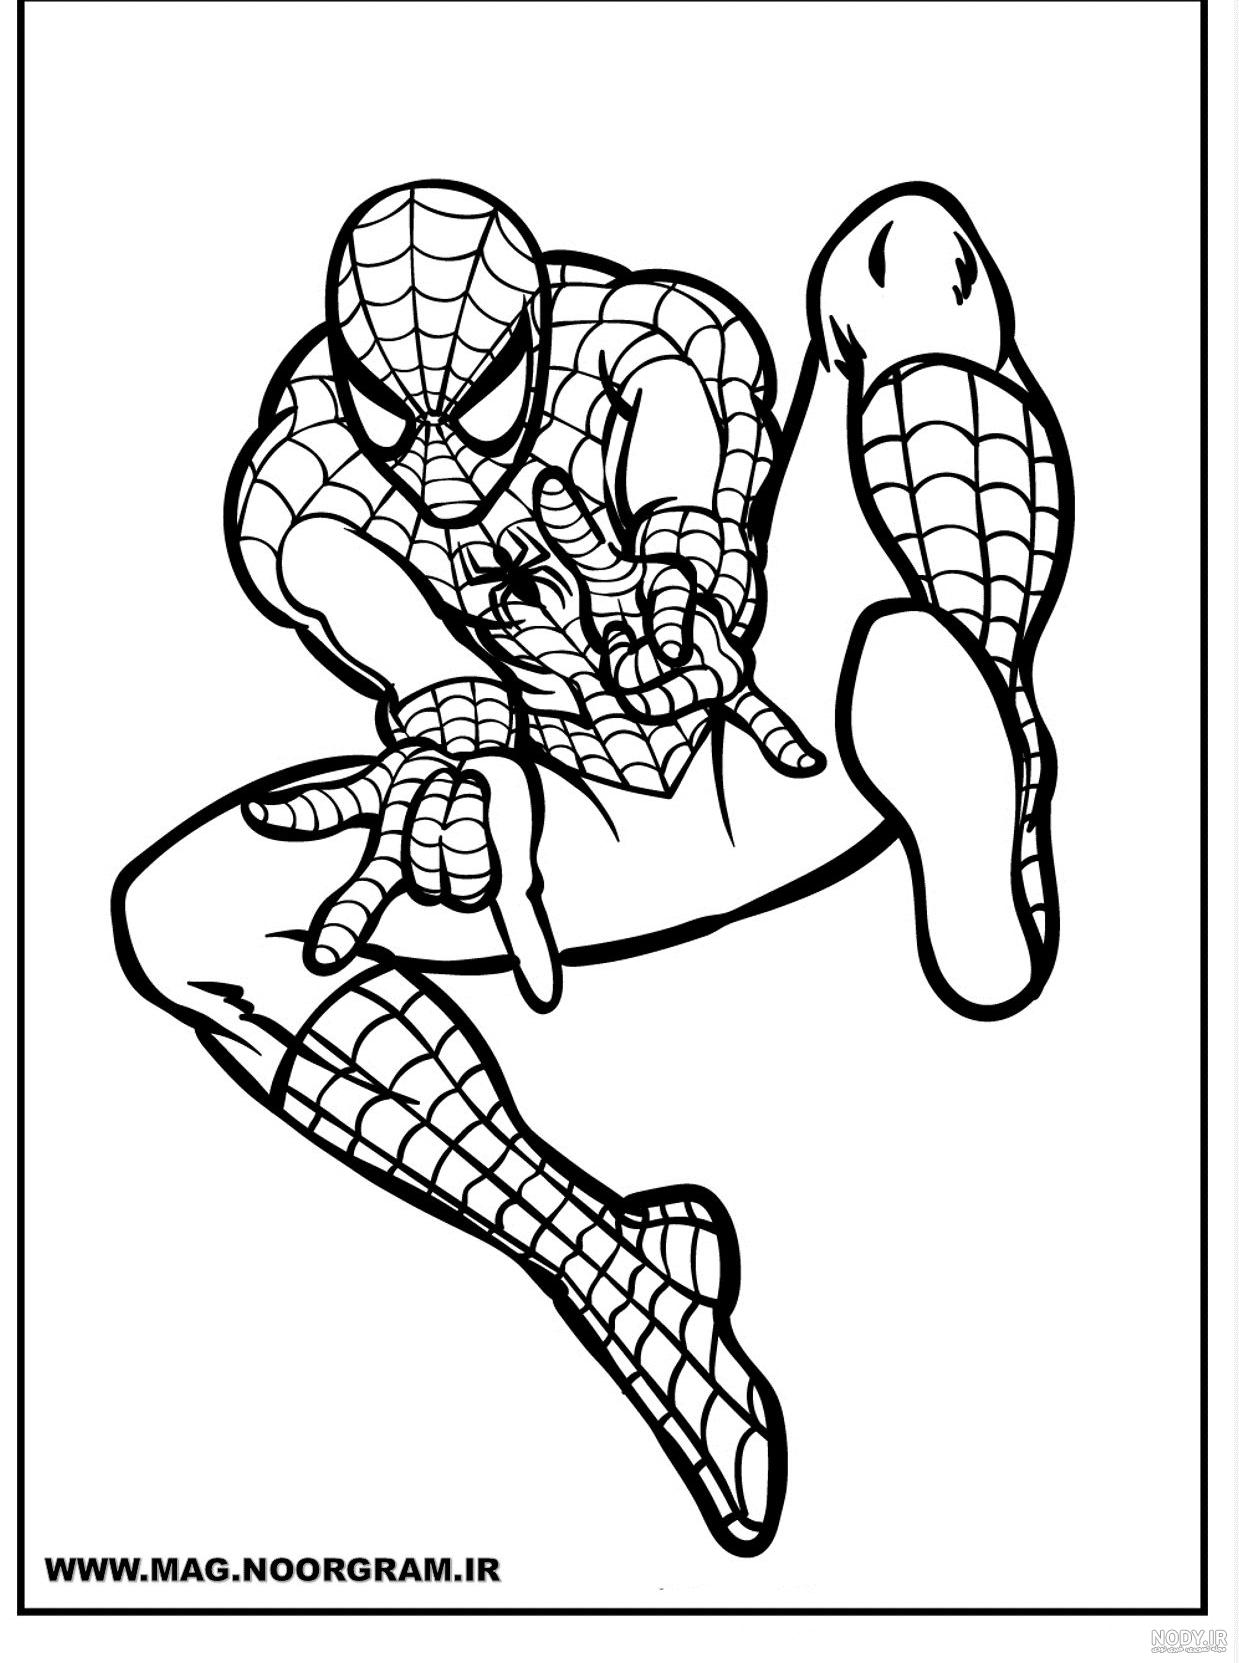 نقاشی مرد عنکبوتی + الگو و آموزش نقاشی مرد عنکبوتی برای کودکان